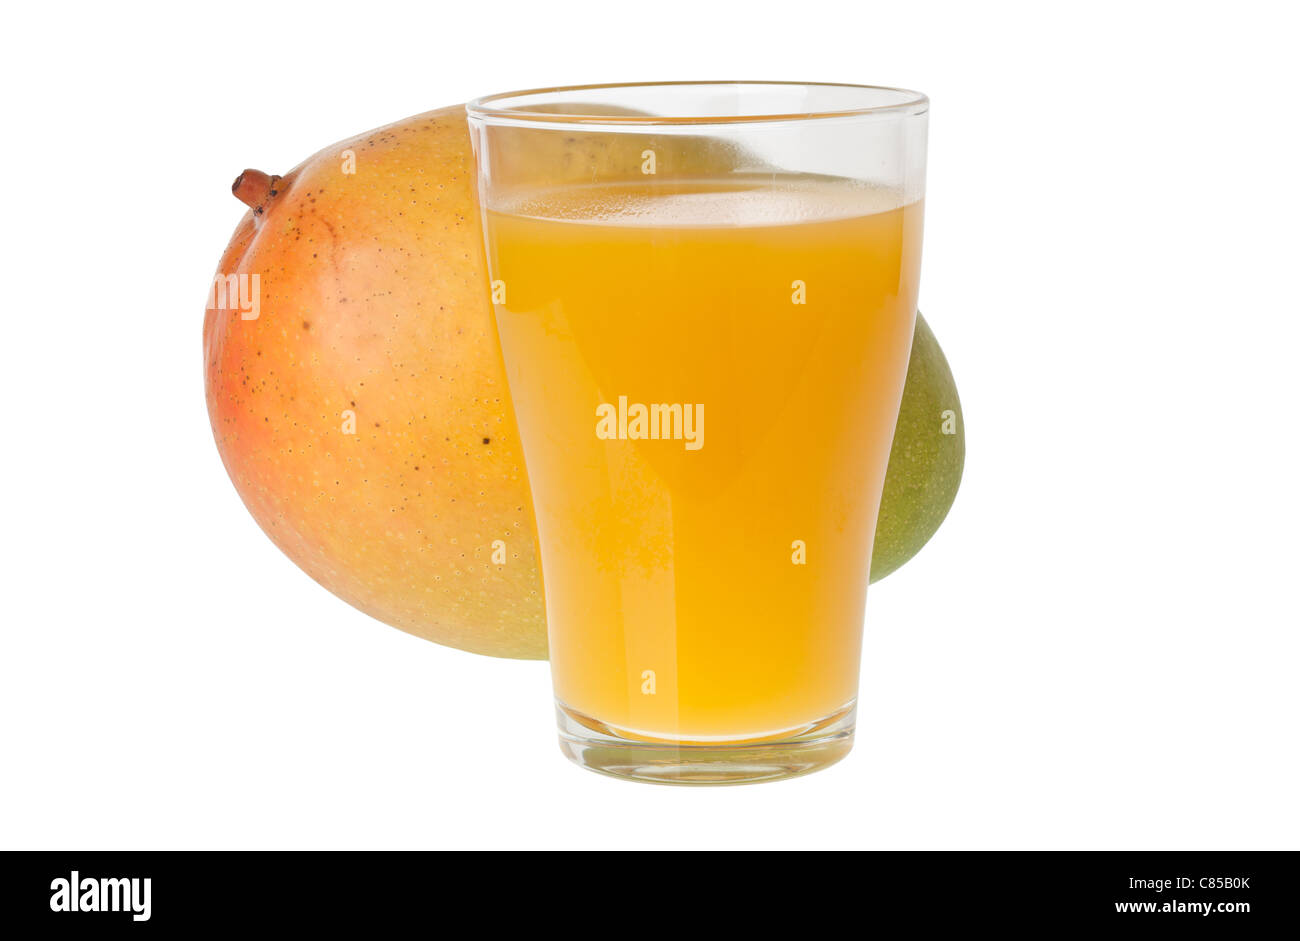 Glass of mango juice and a whole mango isolated on white background Stock Photo